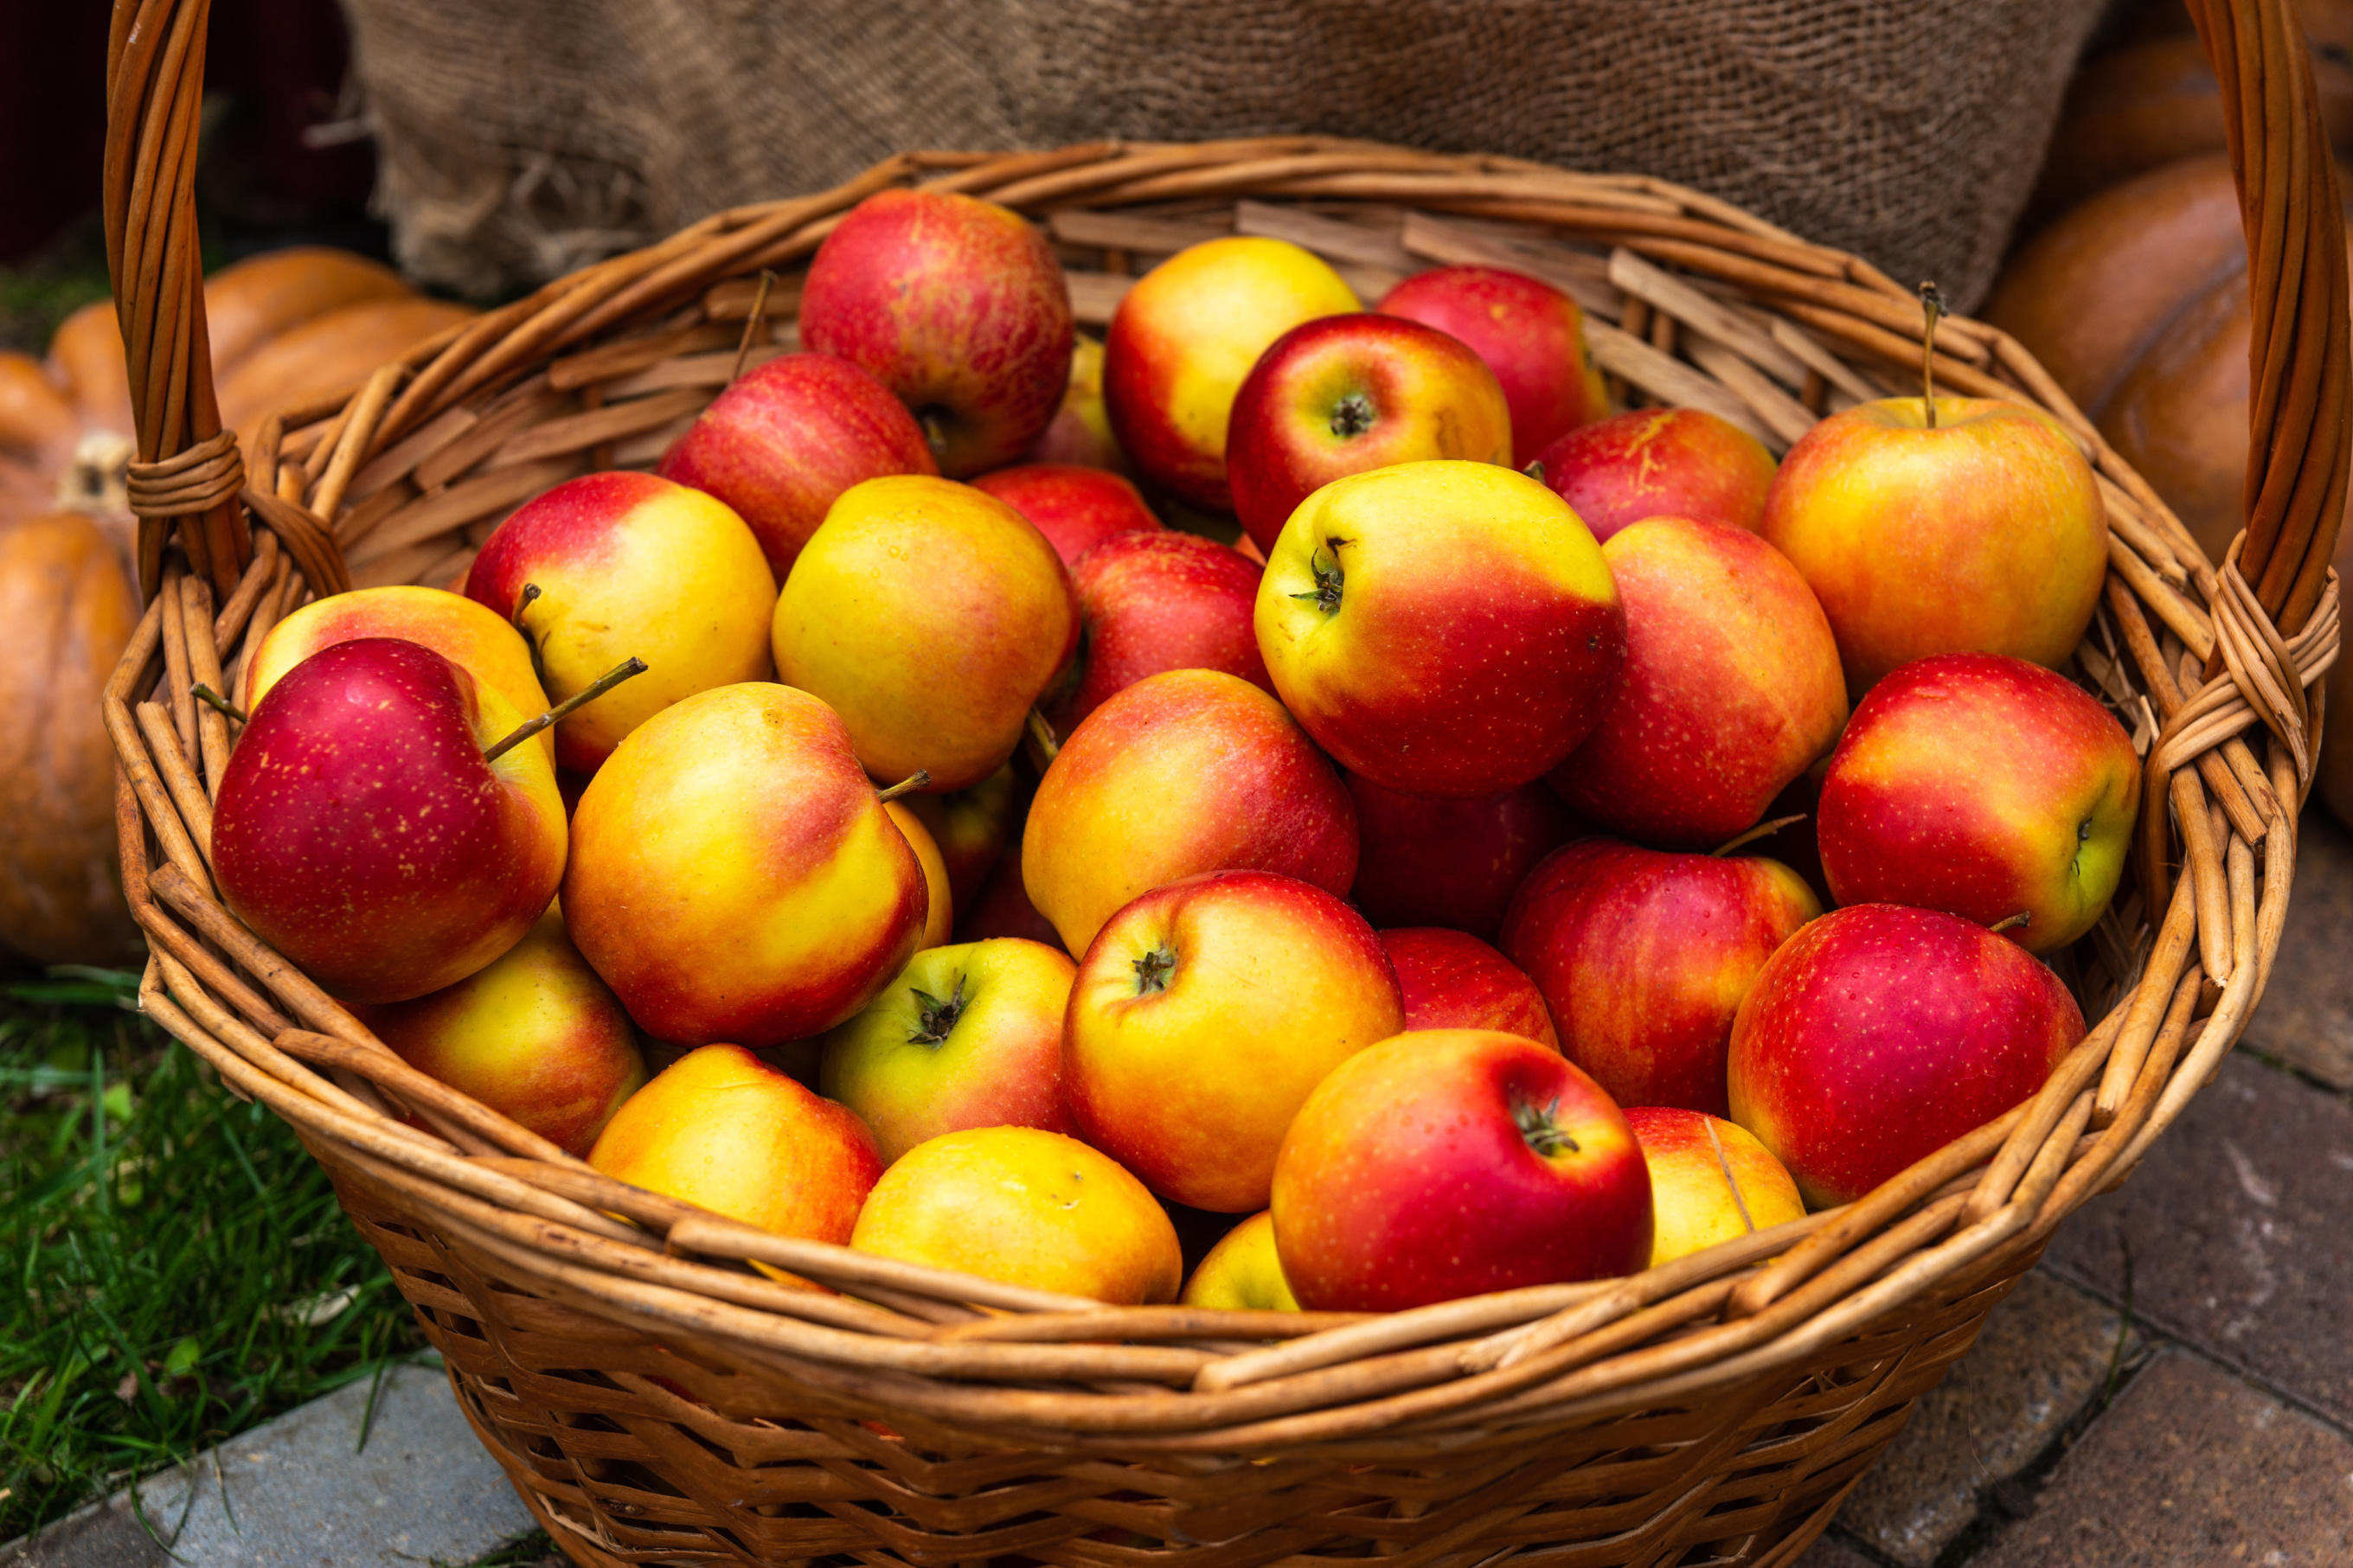 apples in a basket.jpg